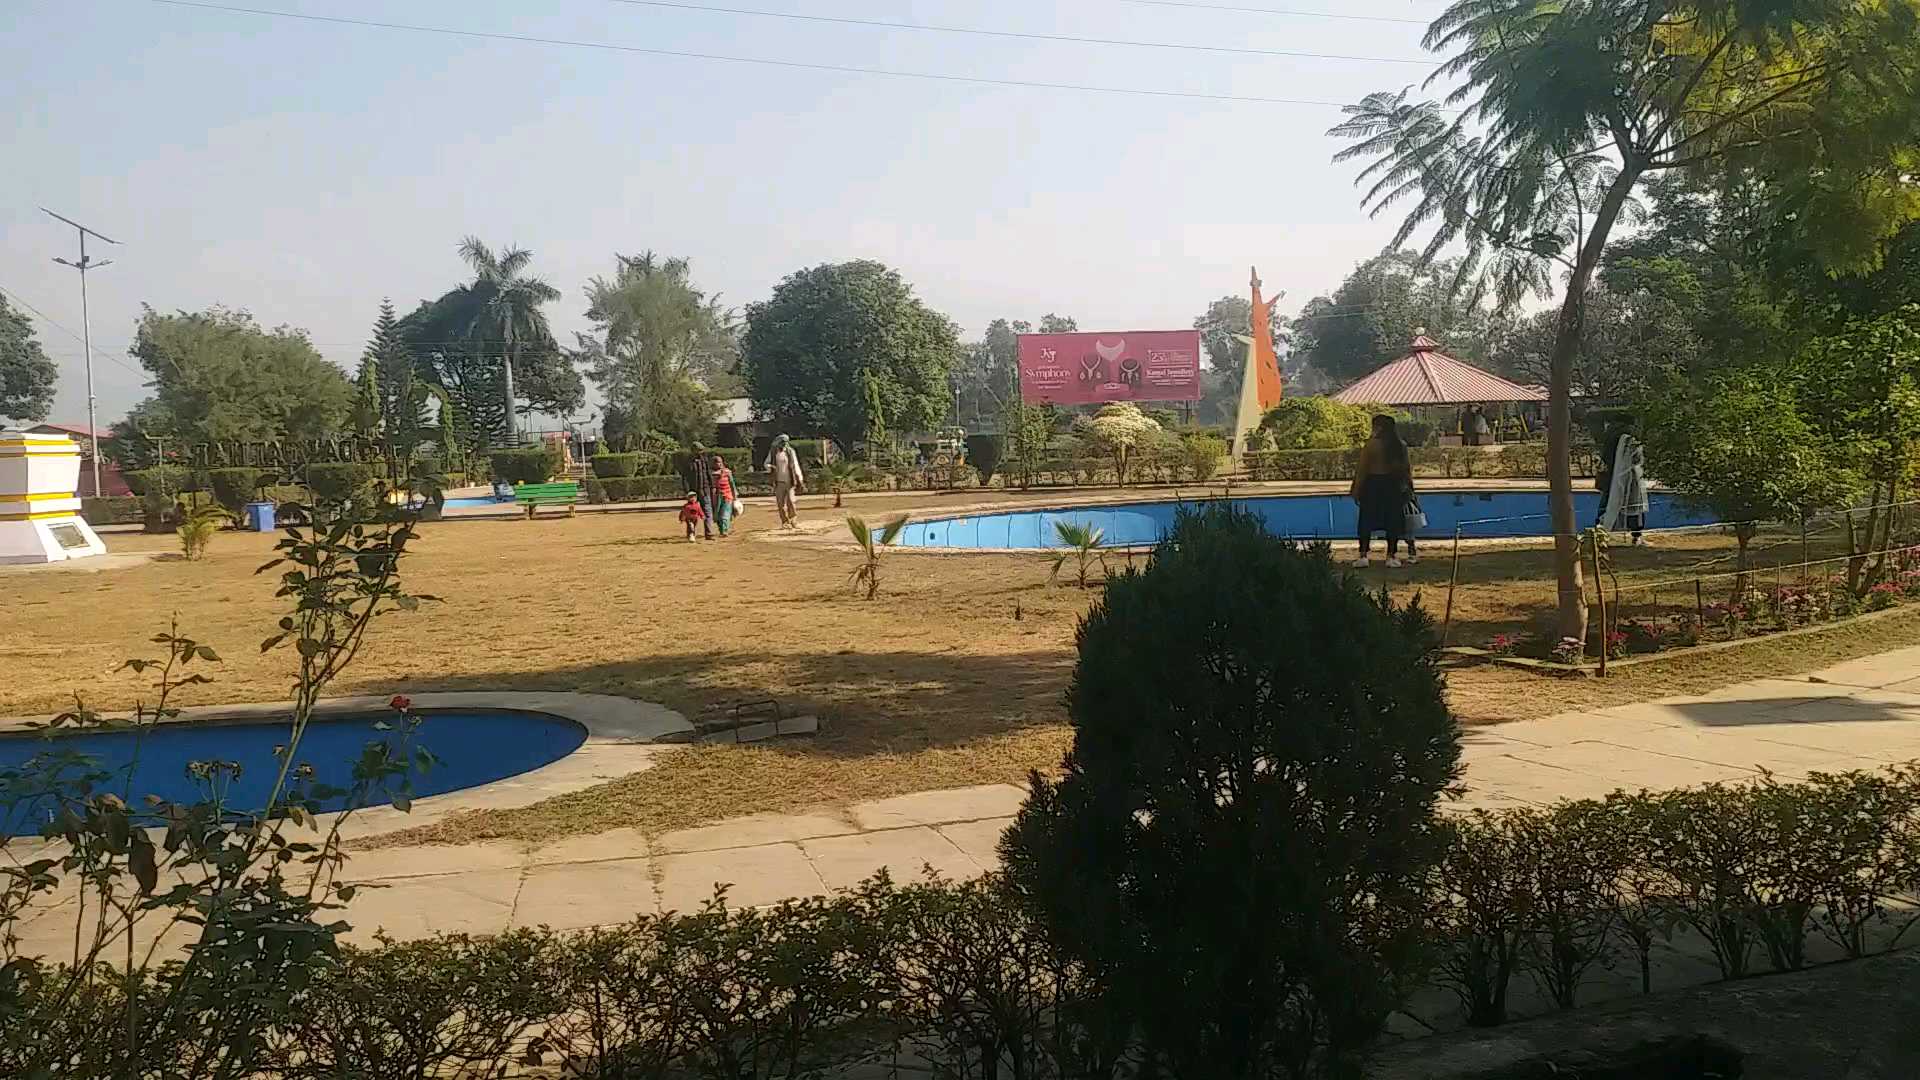 Dakpathar Barrage Park in Vikasnagar